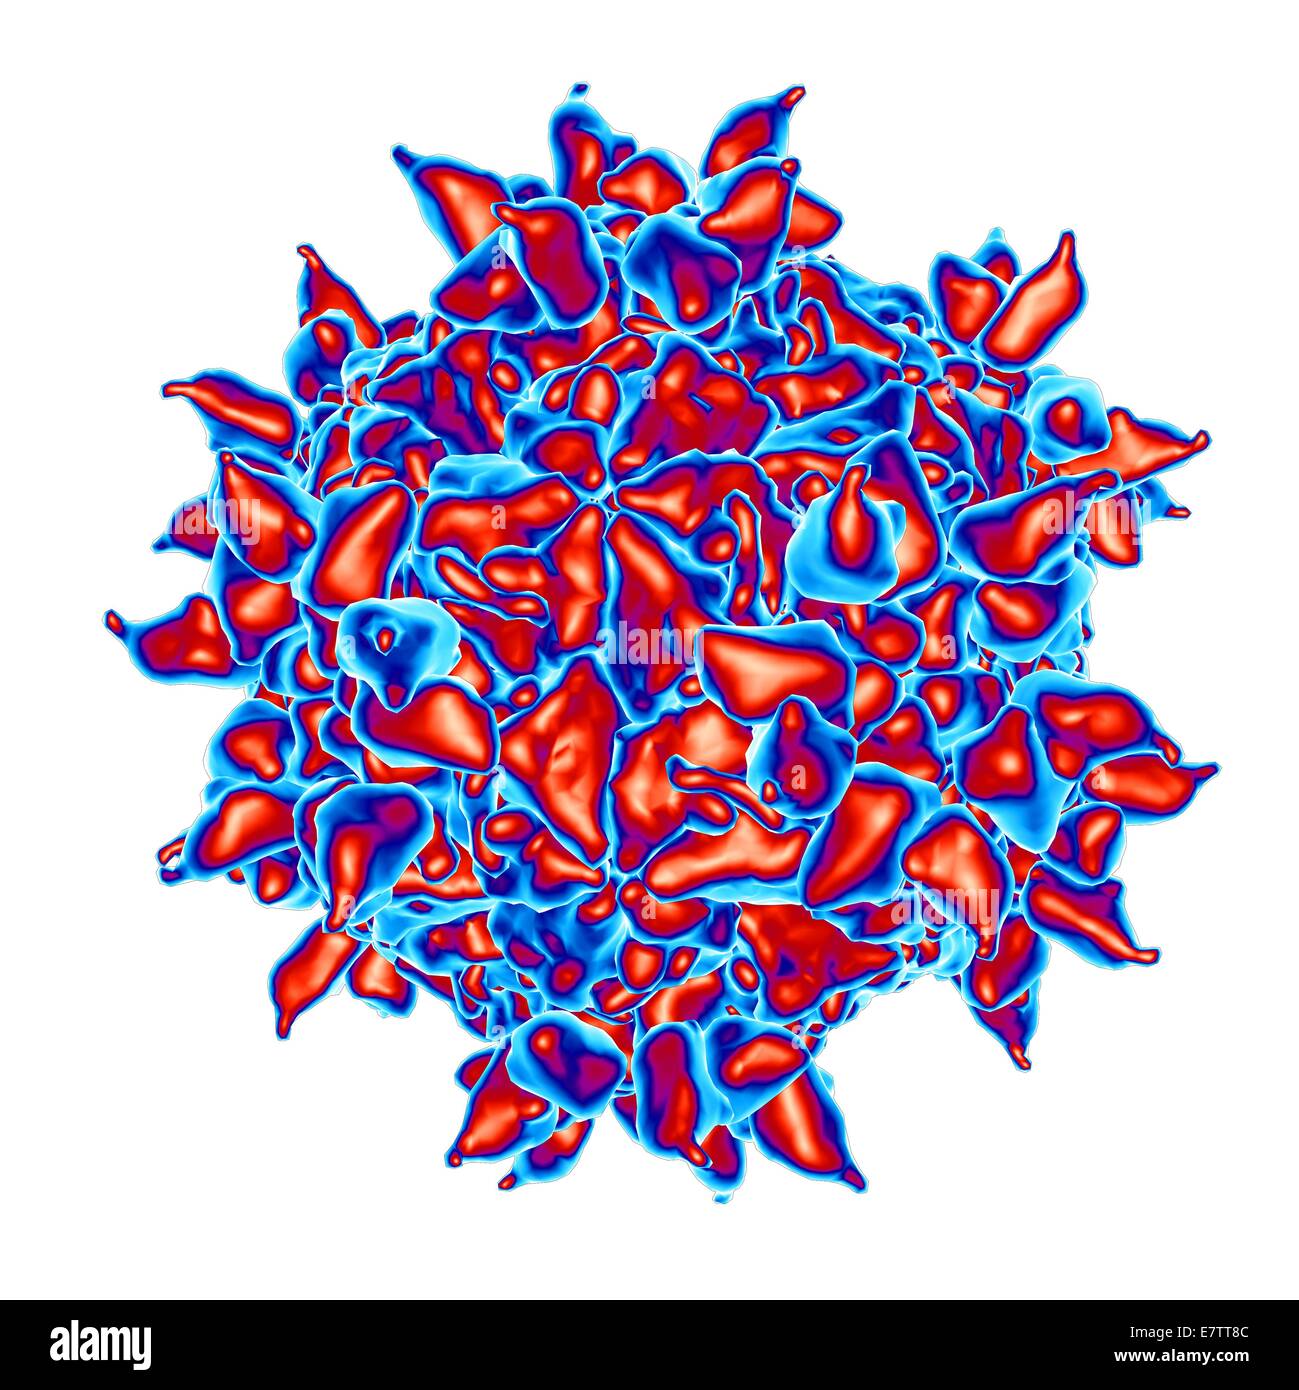 Human rhinovirus, computer artwork. Stock Photo